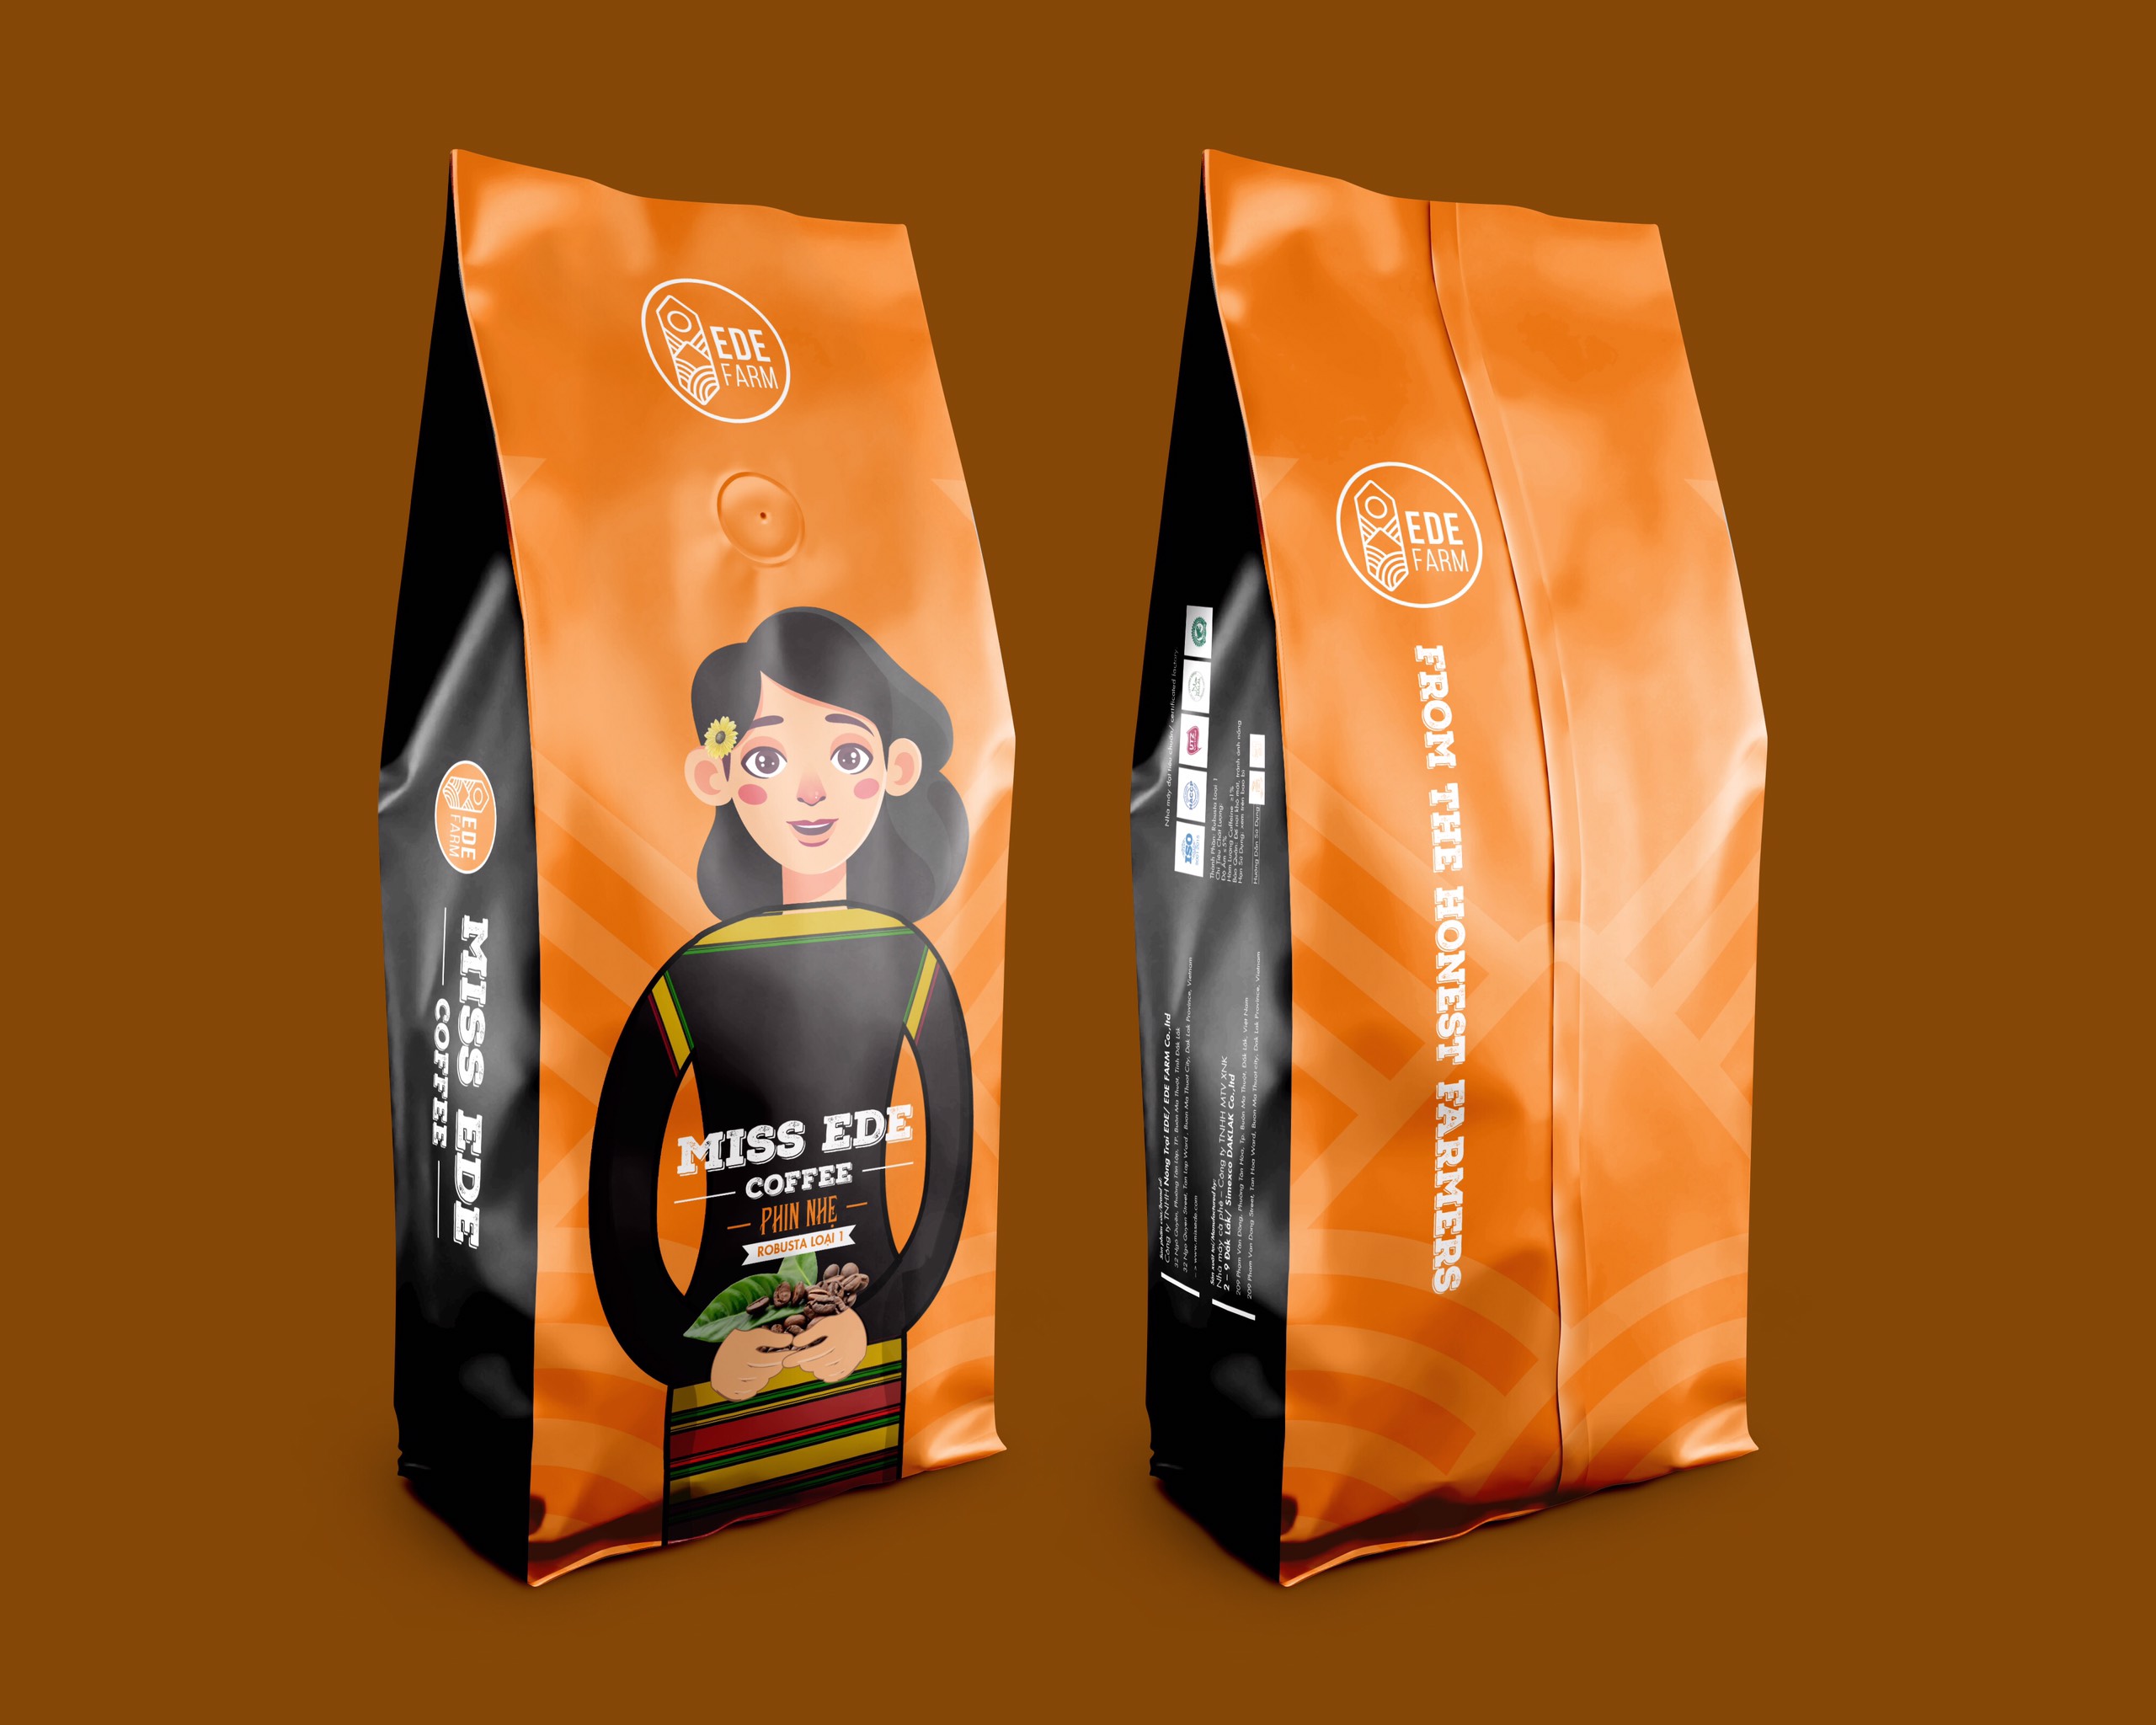 Cà phê Rang mộc nguyên chất MISS EDE Phin Nhẹ - Honey Robusta 250g